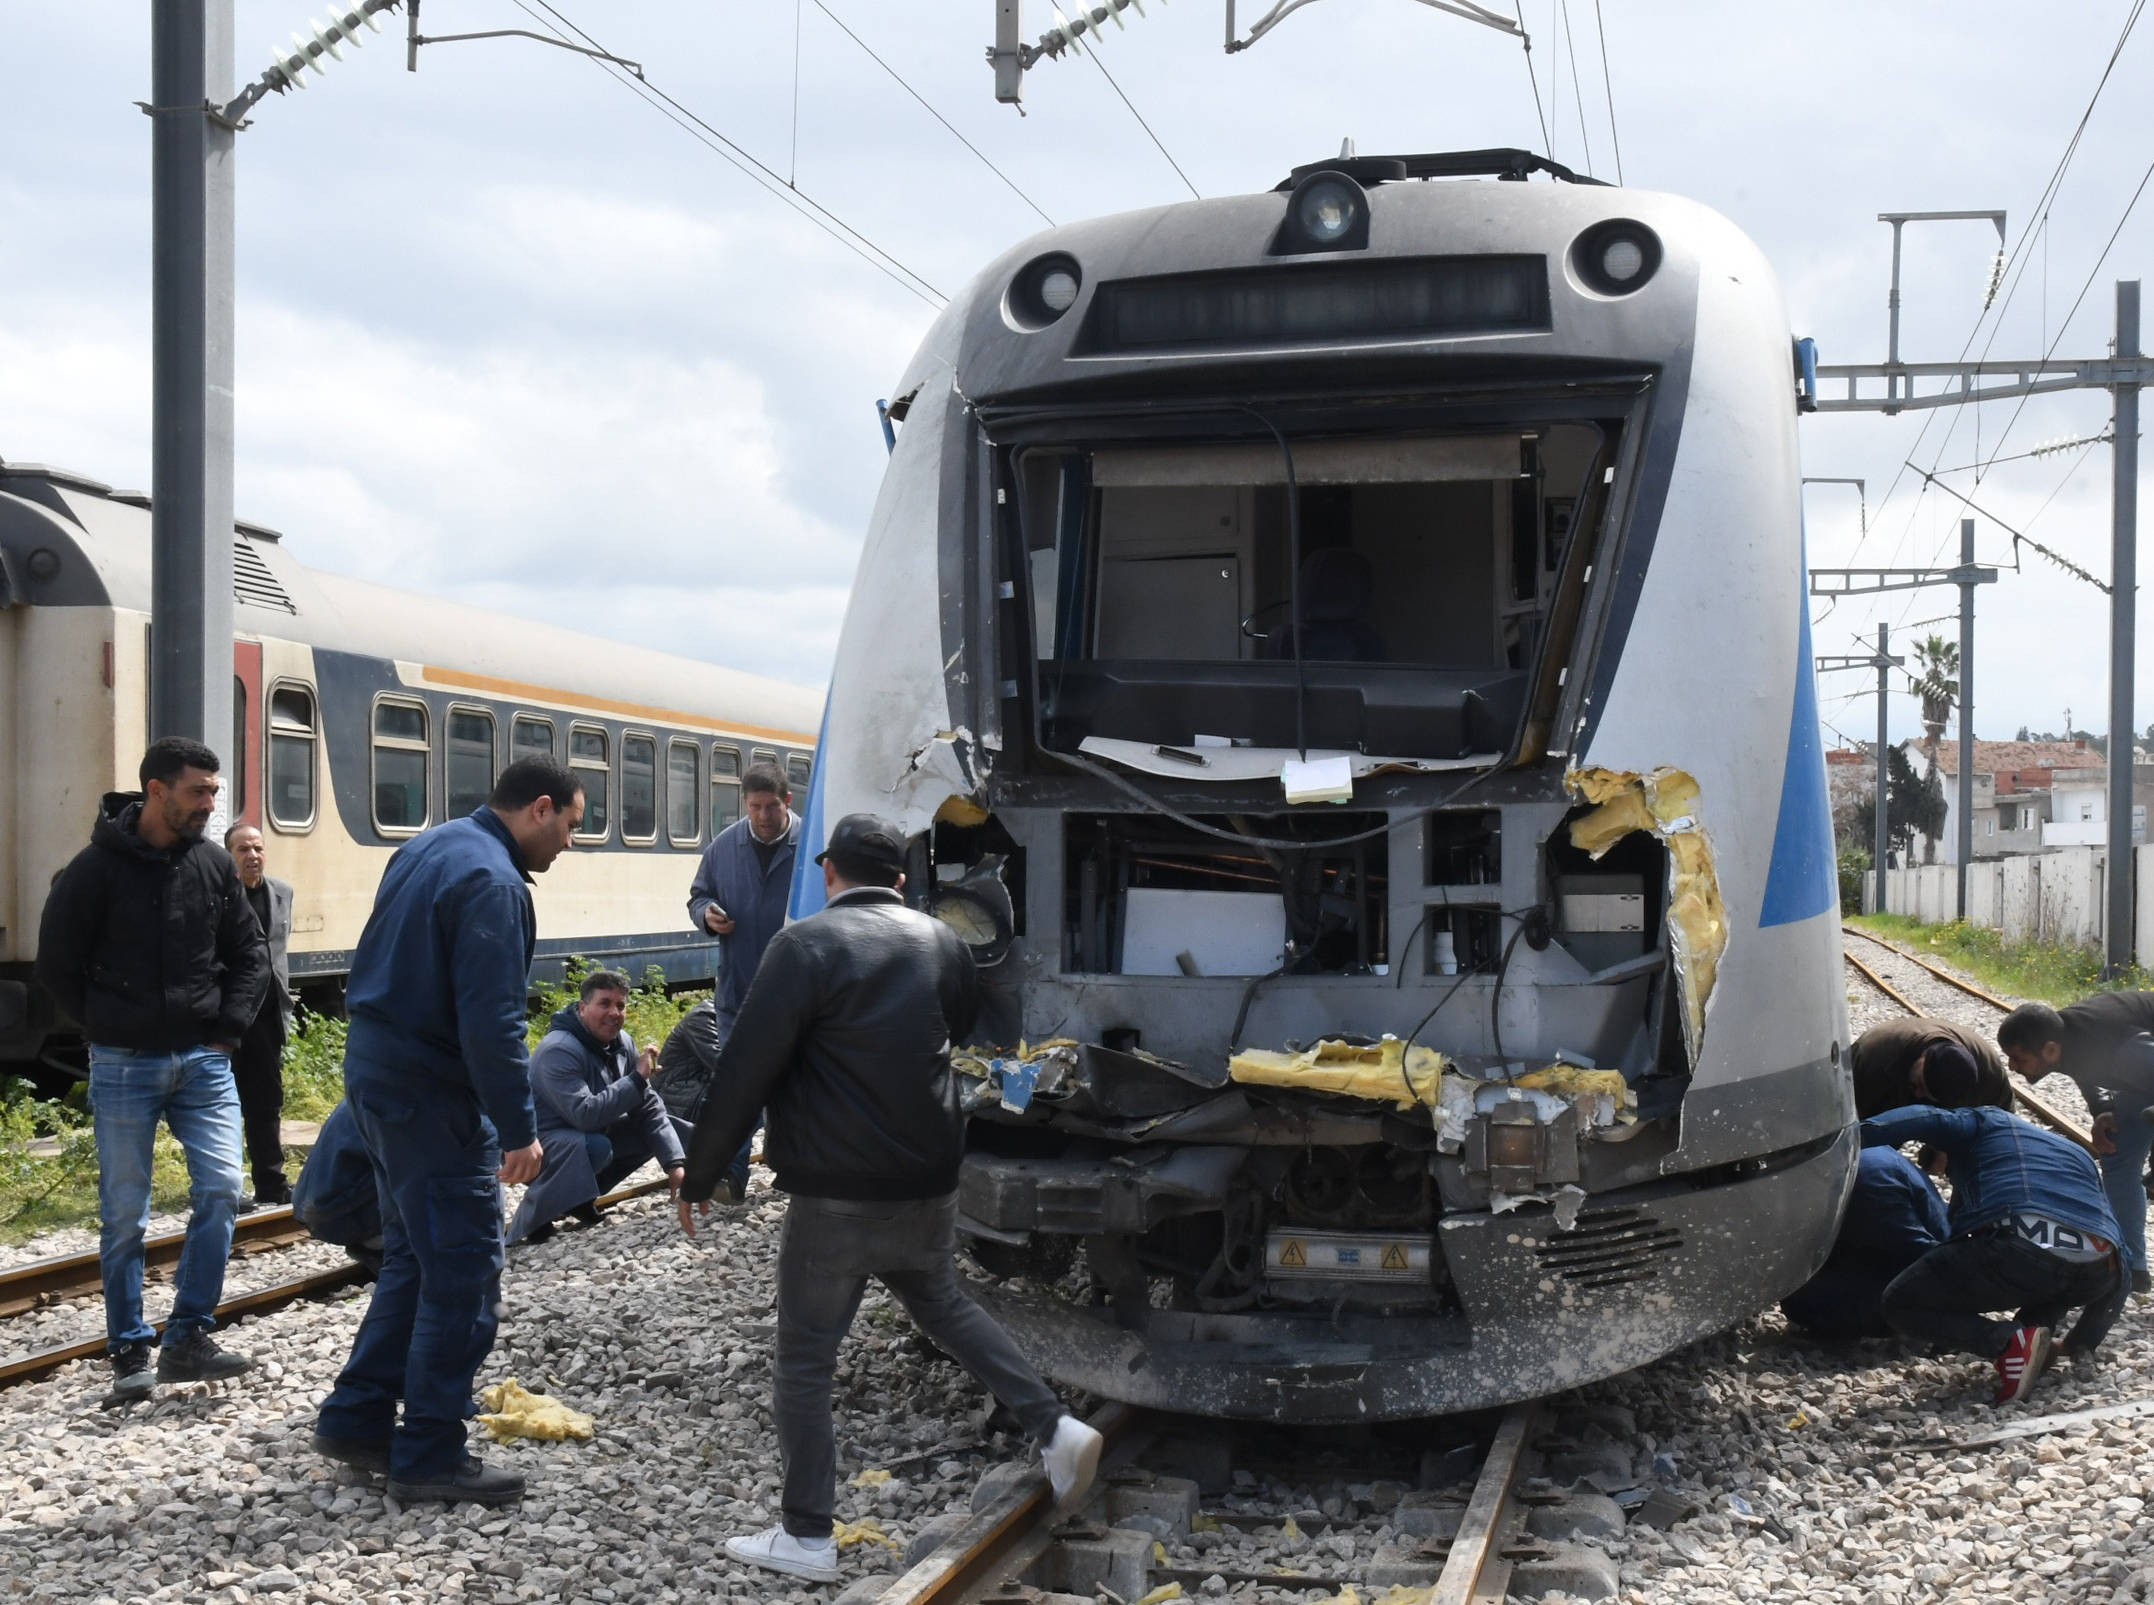 2020年火车事故图片